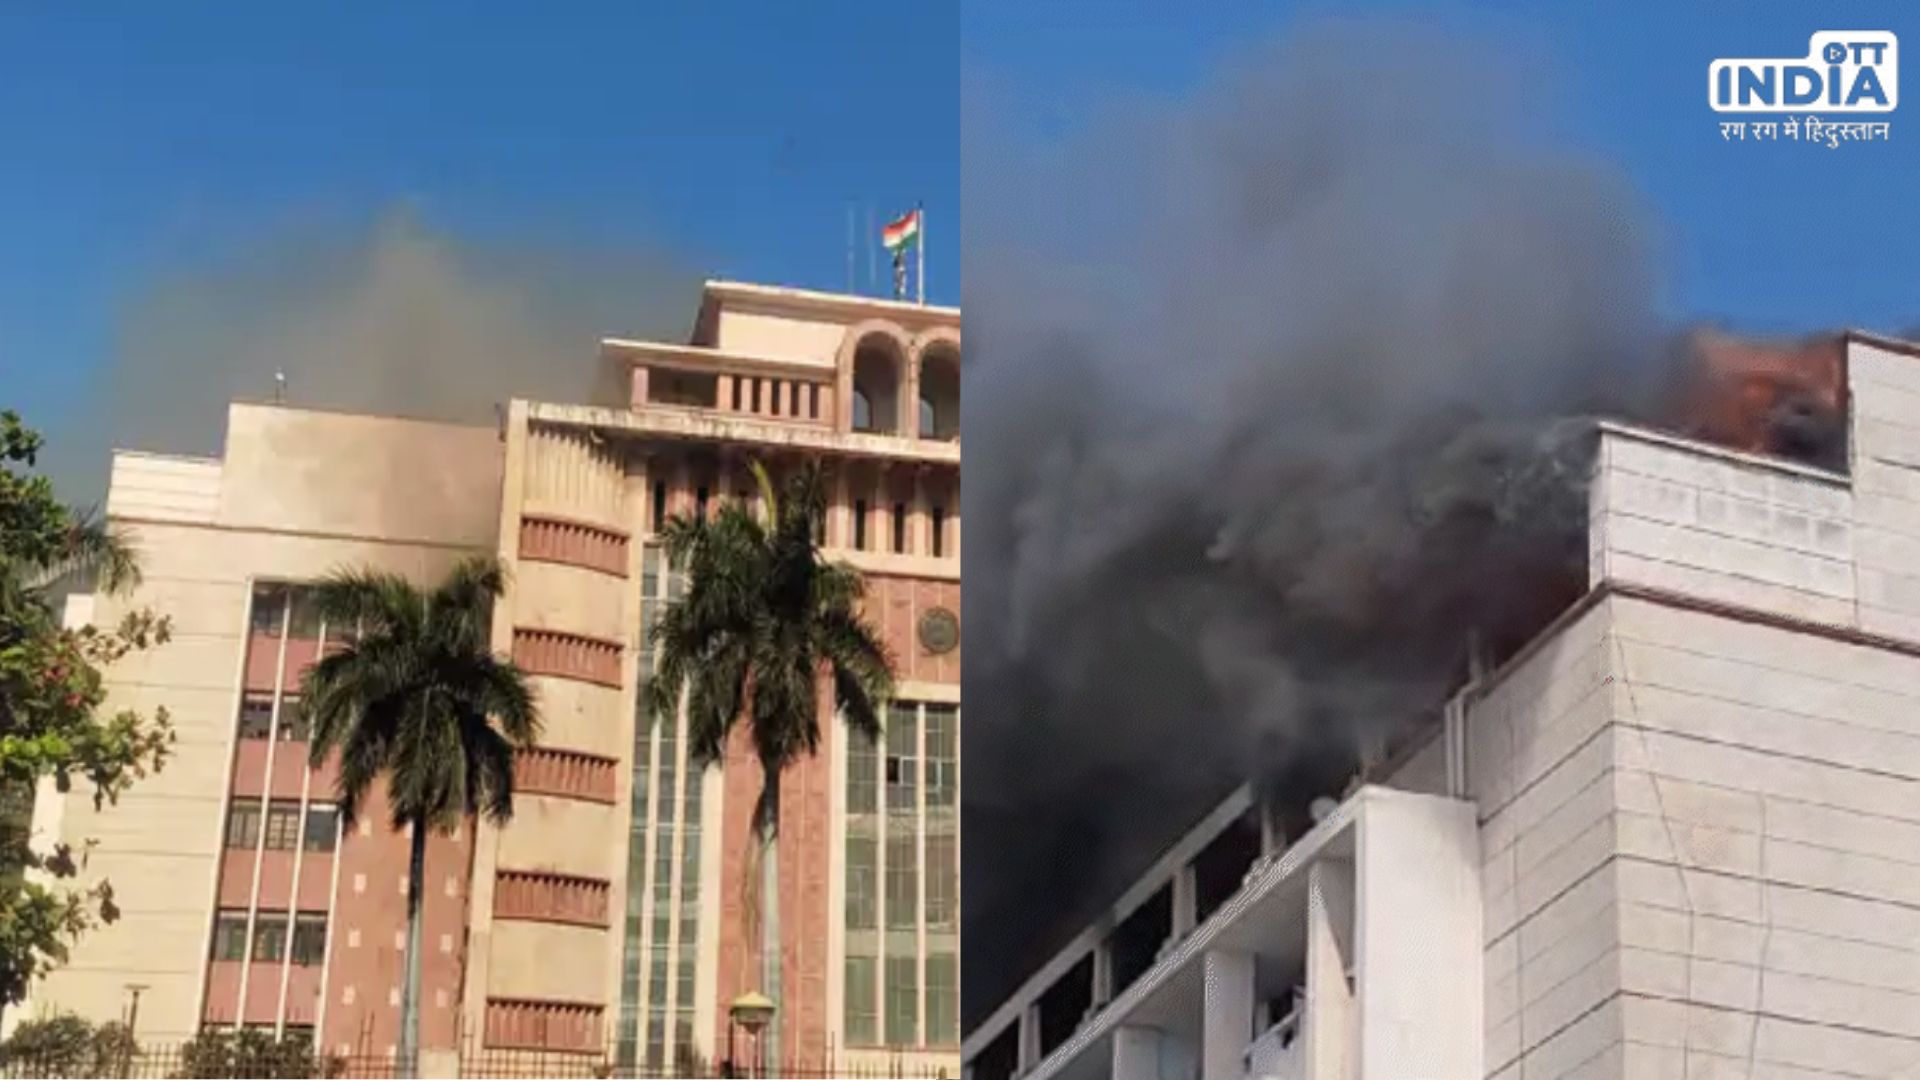 Bhopal News: मंत्रालय भवन की तीसरी मंजिल में लगी आग, कई महत्वपूर्ण दस्तावेज खाक, सीएम ने दिए जांच के निर्देश